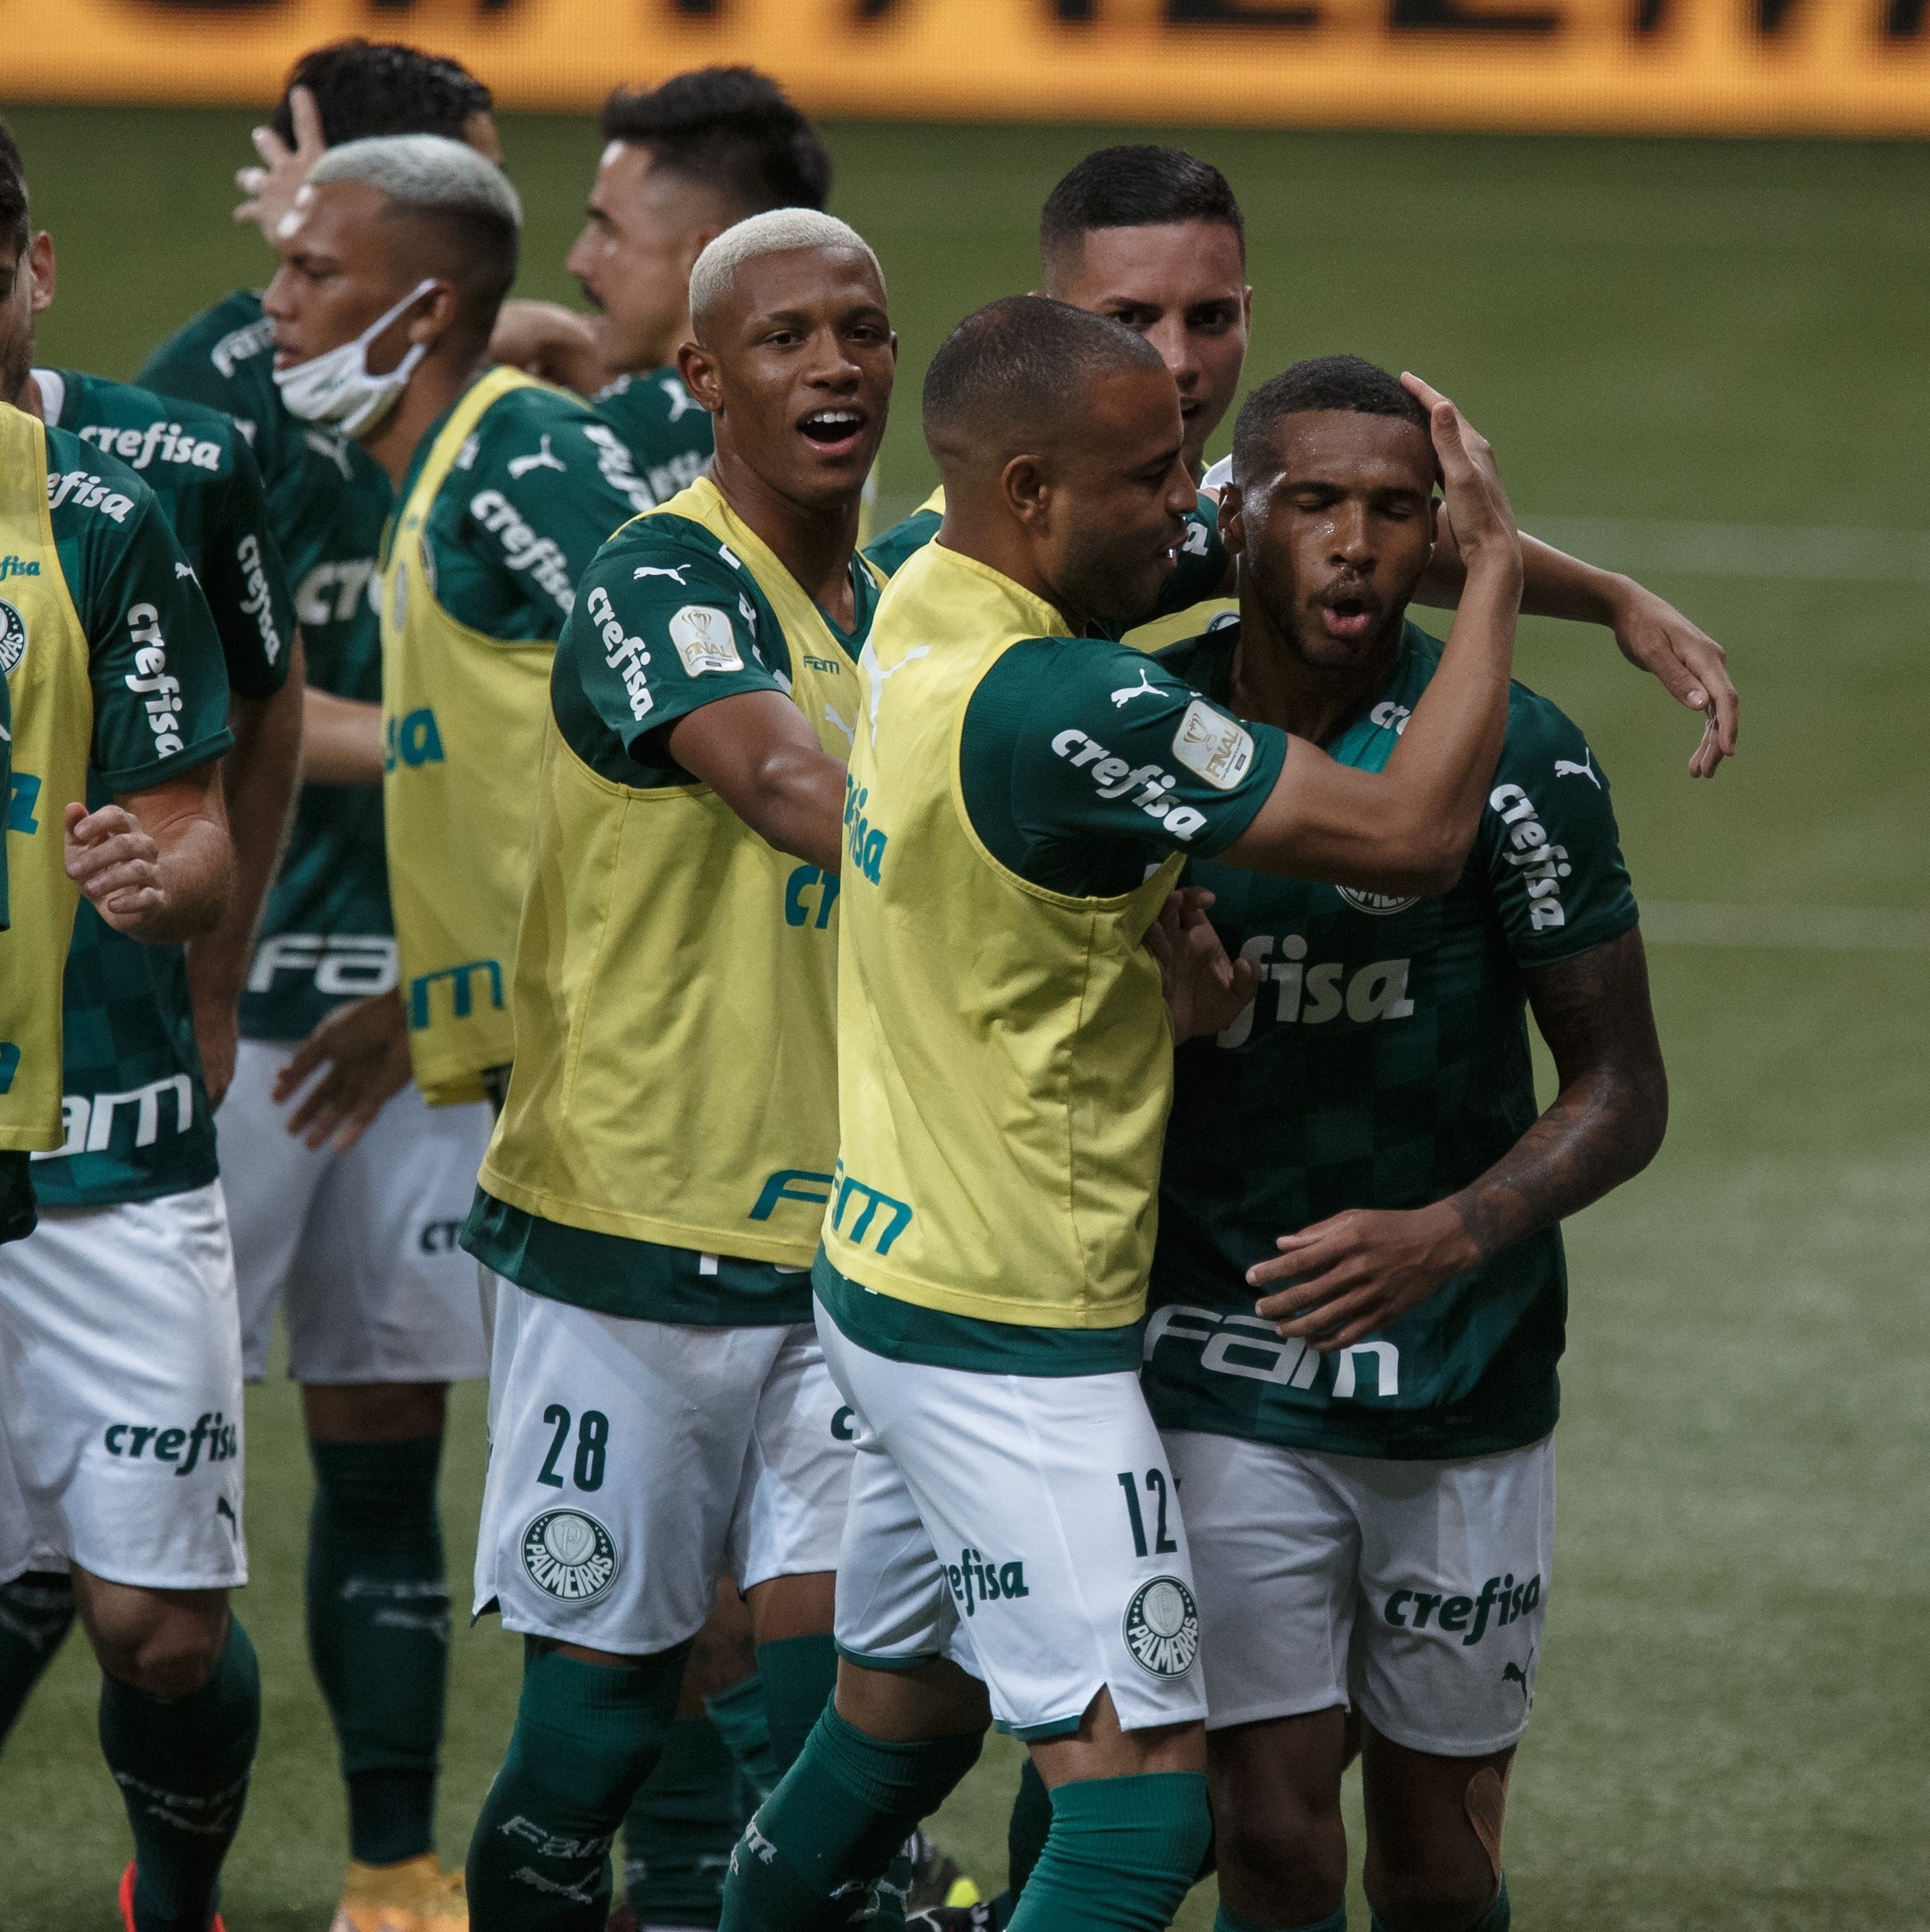 Verdão supera Grêmio em casa e conquista sua 4ª Copa do Brasil de forma  invicta – Palmeiras